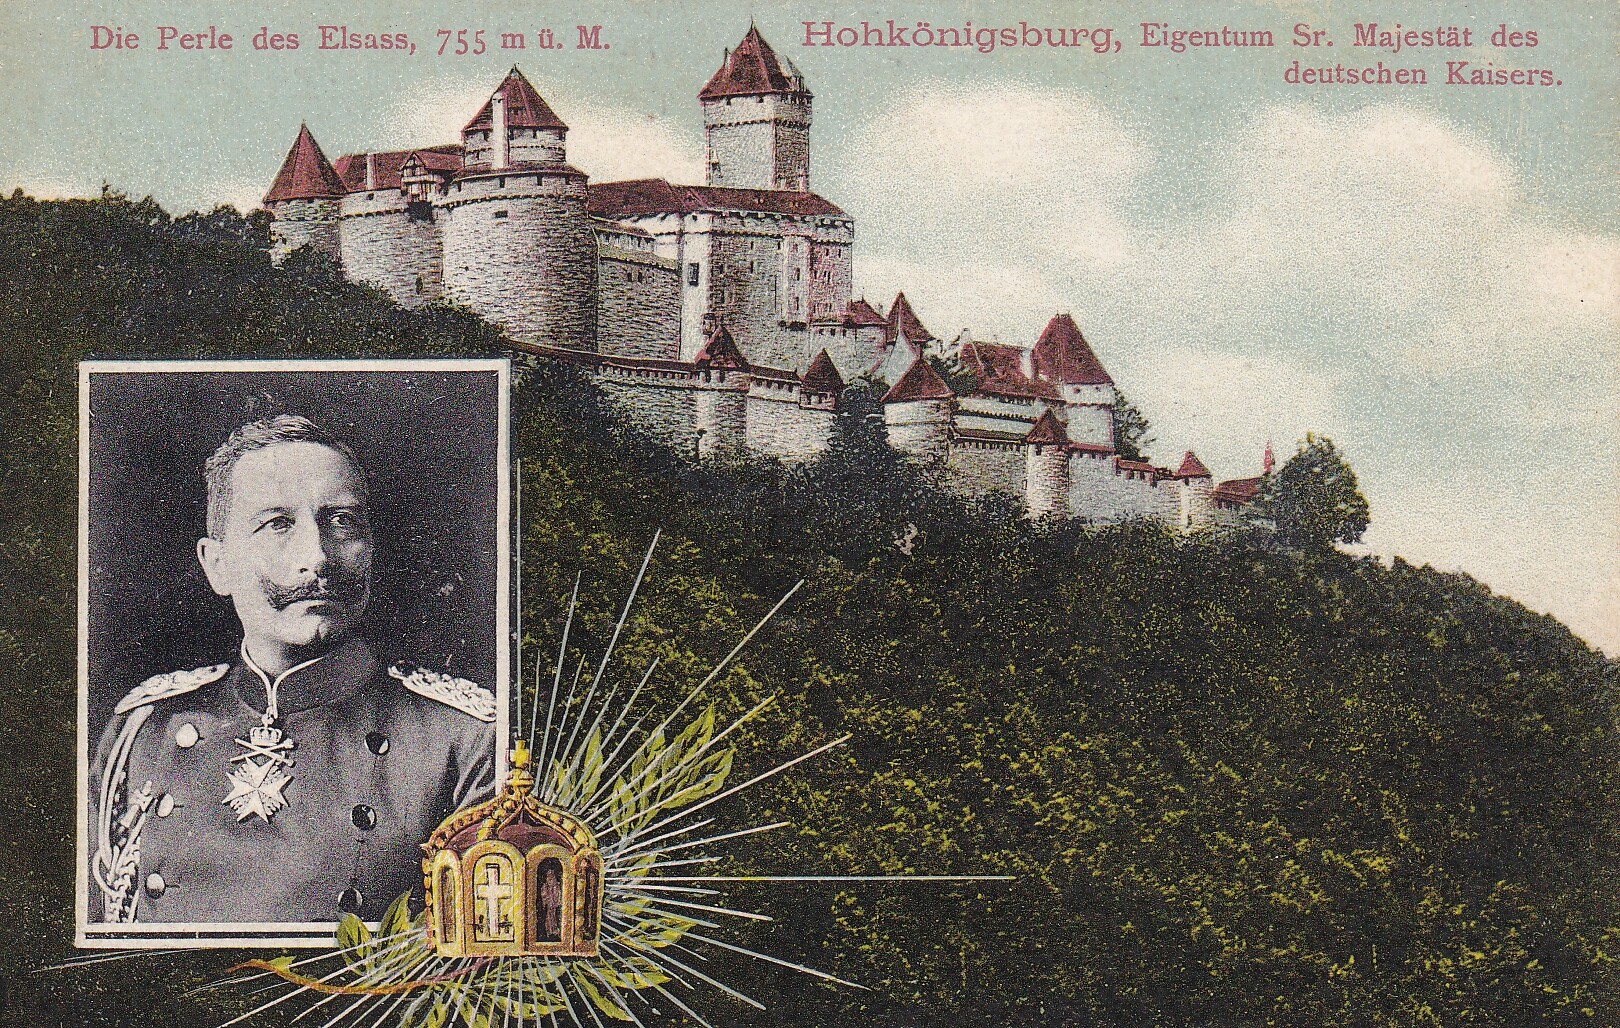 Bildpostkarte mit kolorierter Ansicht der Hohkönigsburg (Elsaß) mit Porträt Kaiser Wilhelms II. (1859-1941), um 1908 (Schloß Wernigerode GmbH RR-F)